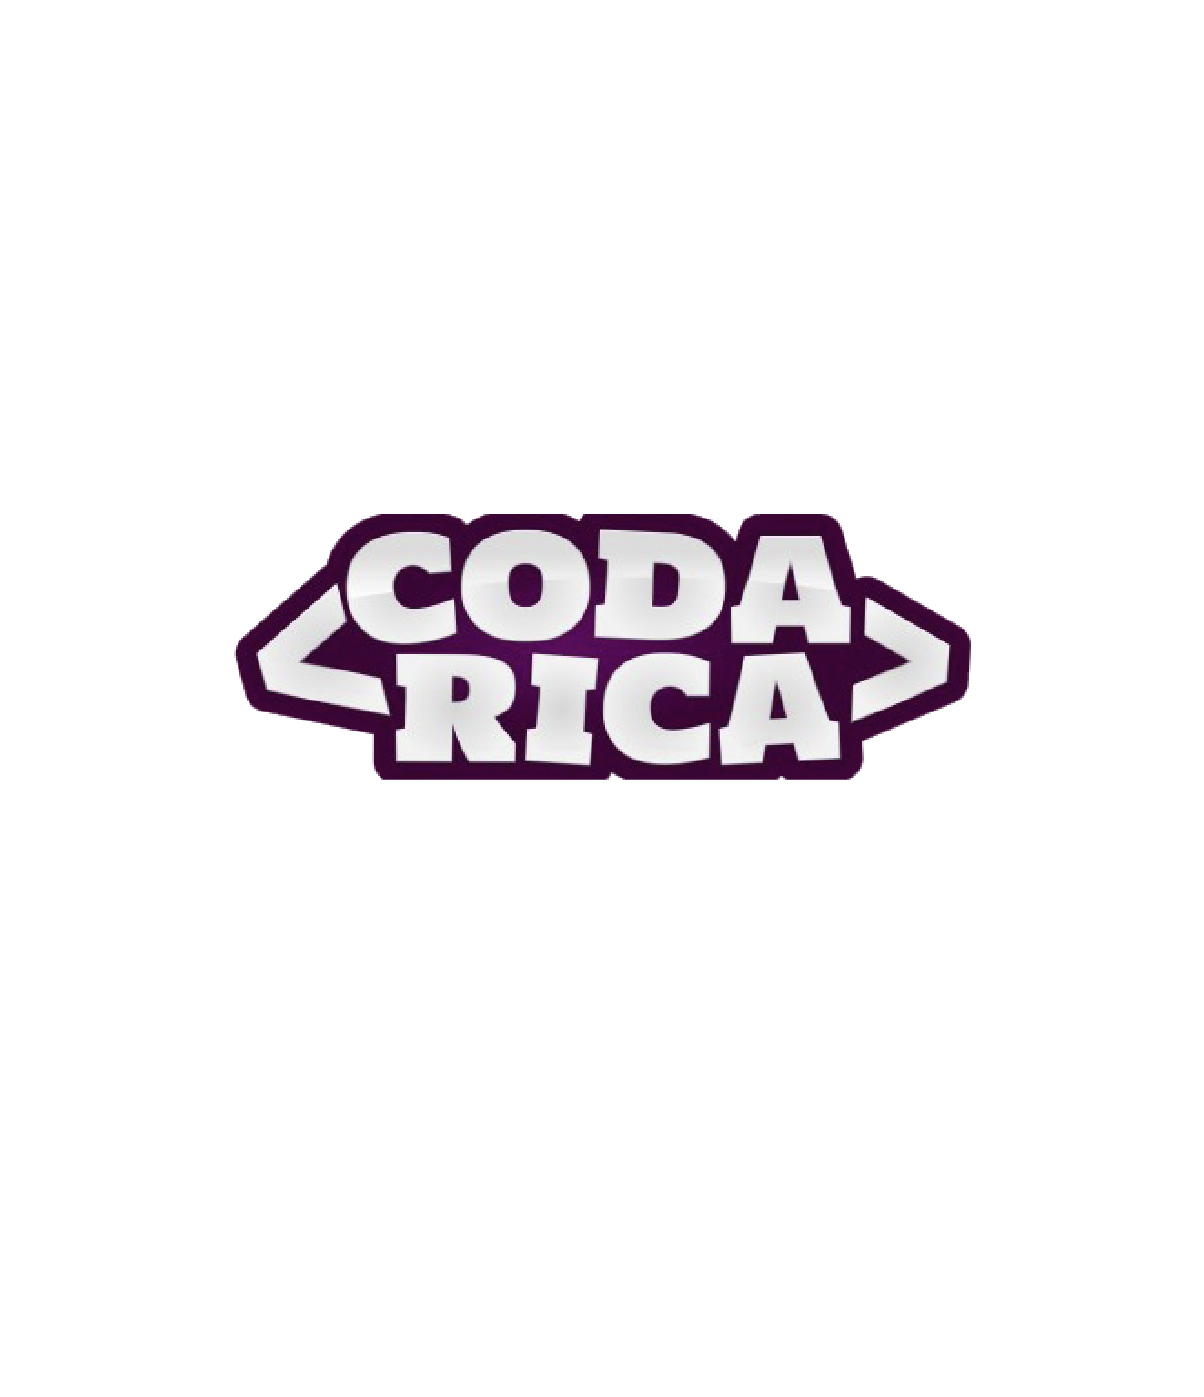 Coda Rica